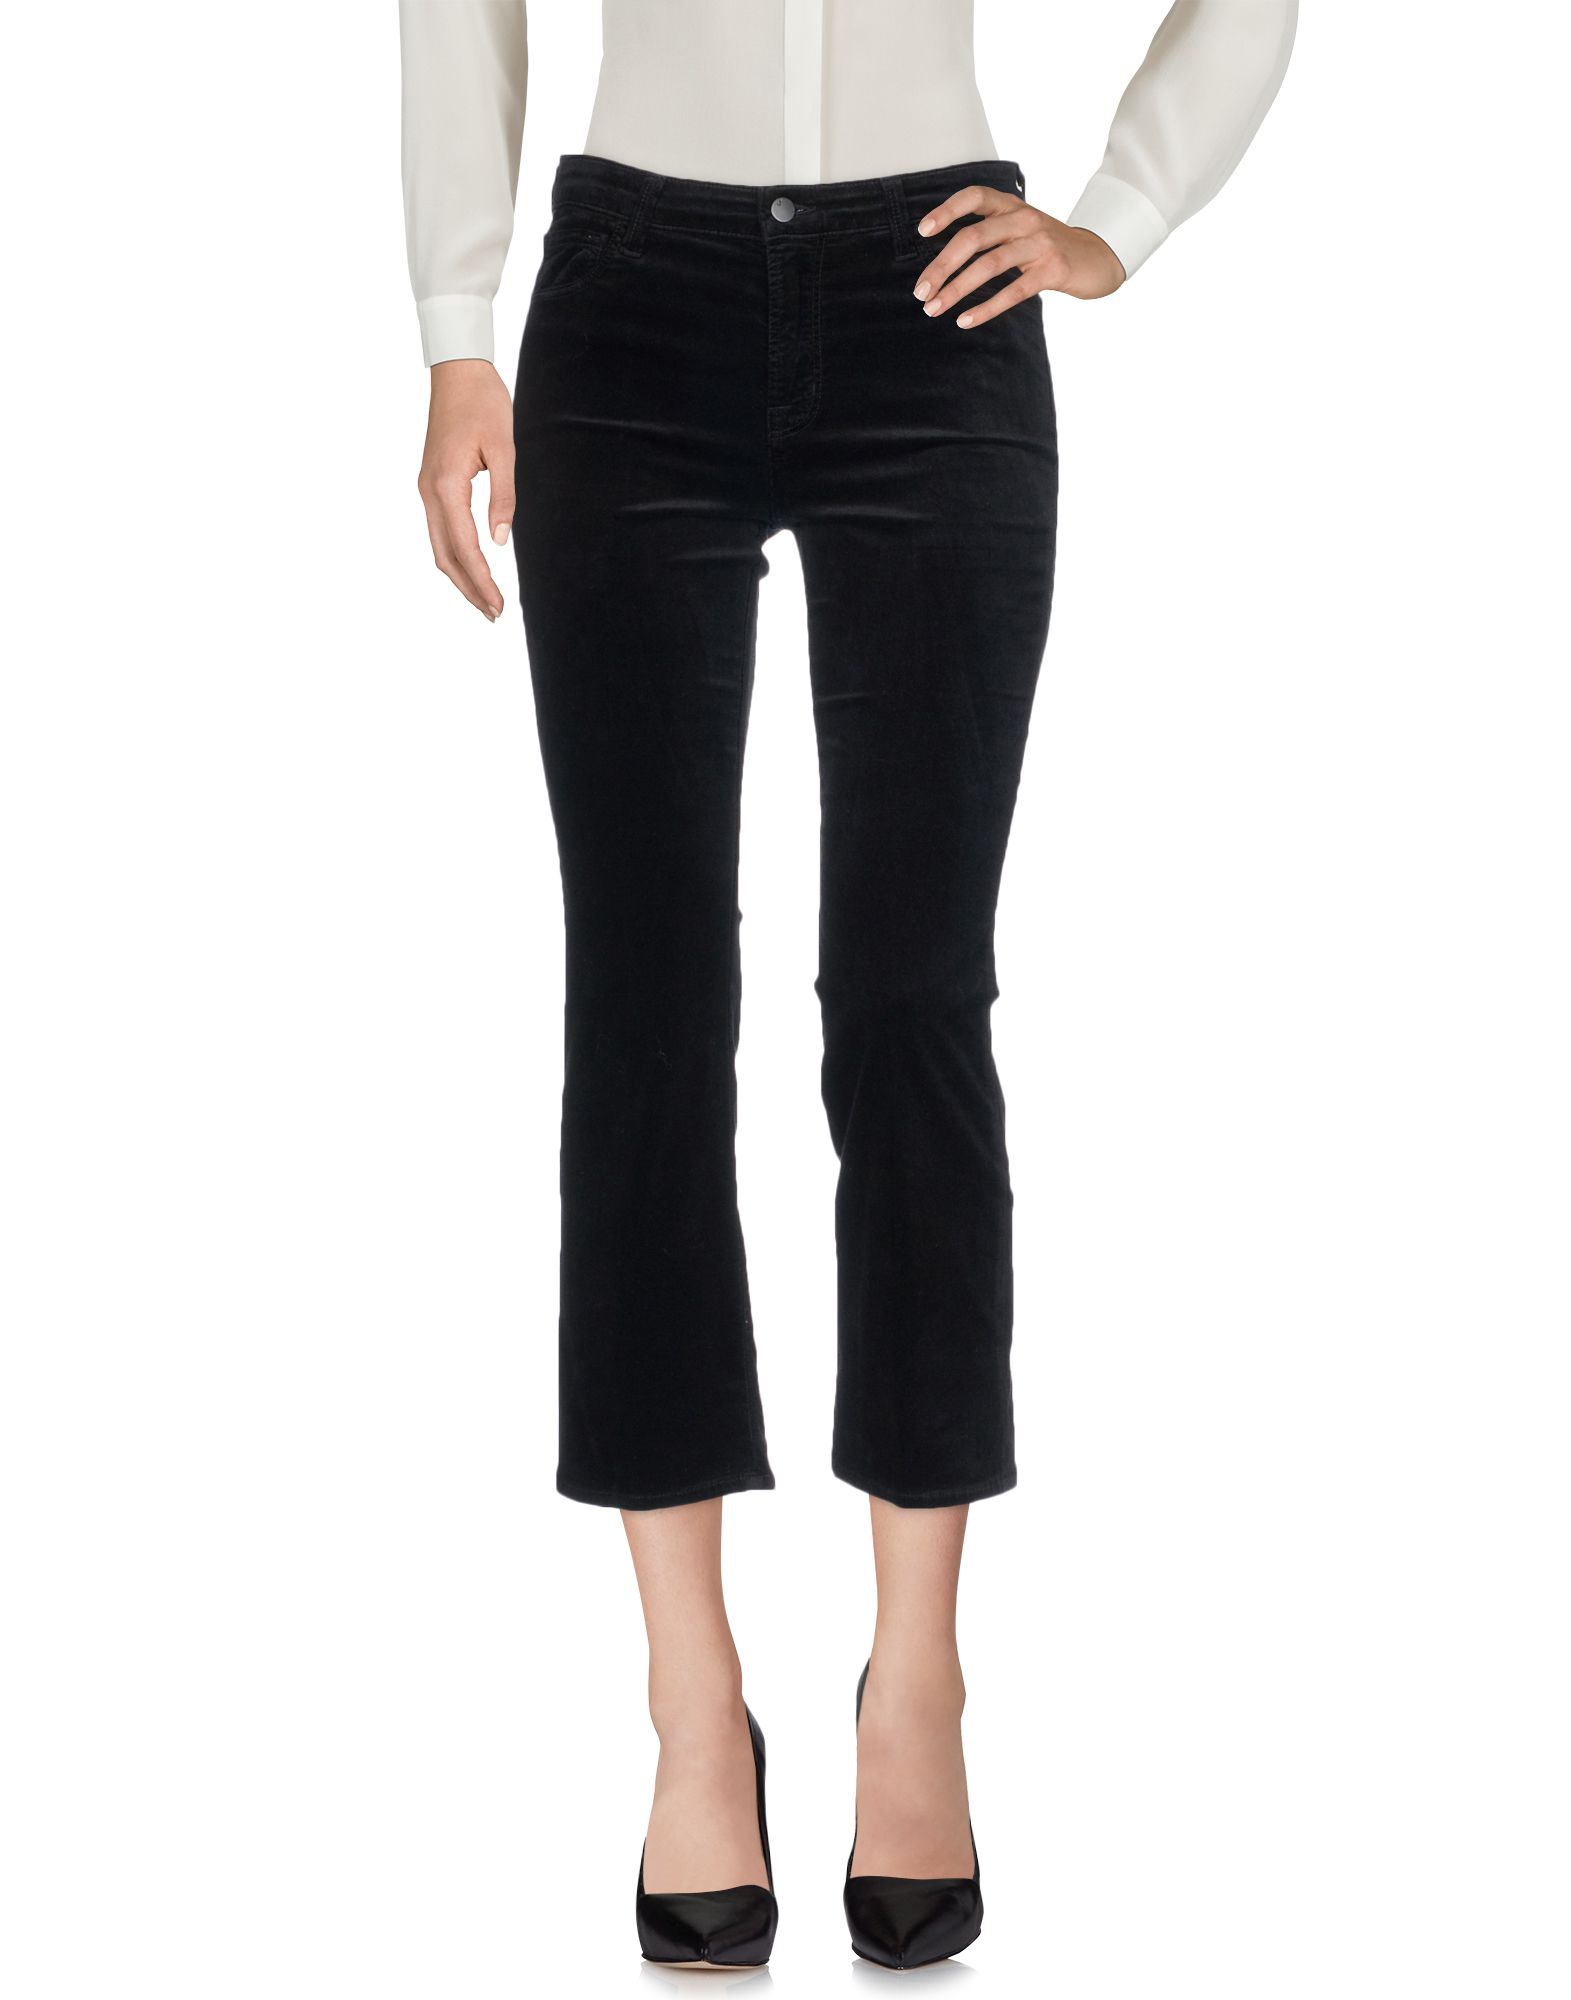 J Brand Woman Pants Black Size 28 Cotton, Modal, Polyester, Polyurethane